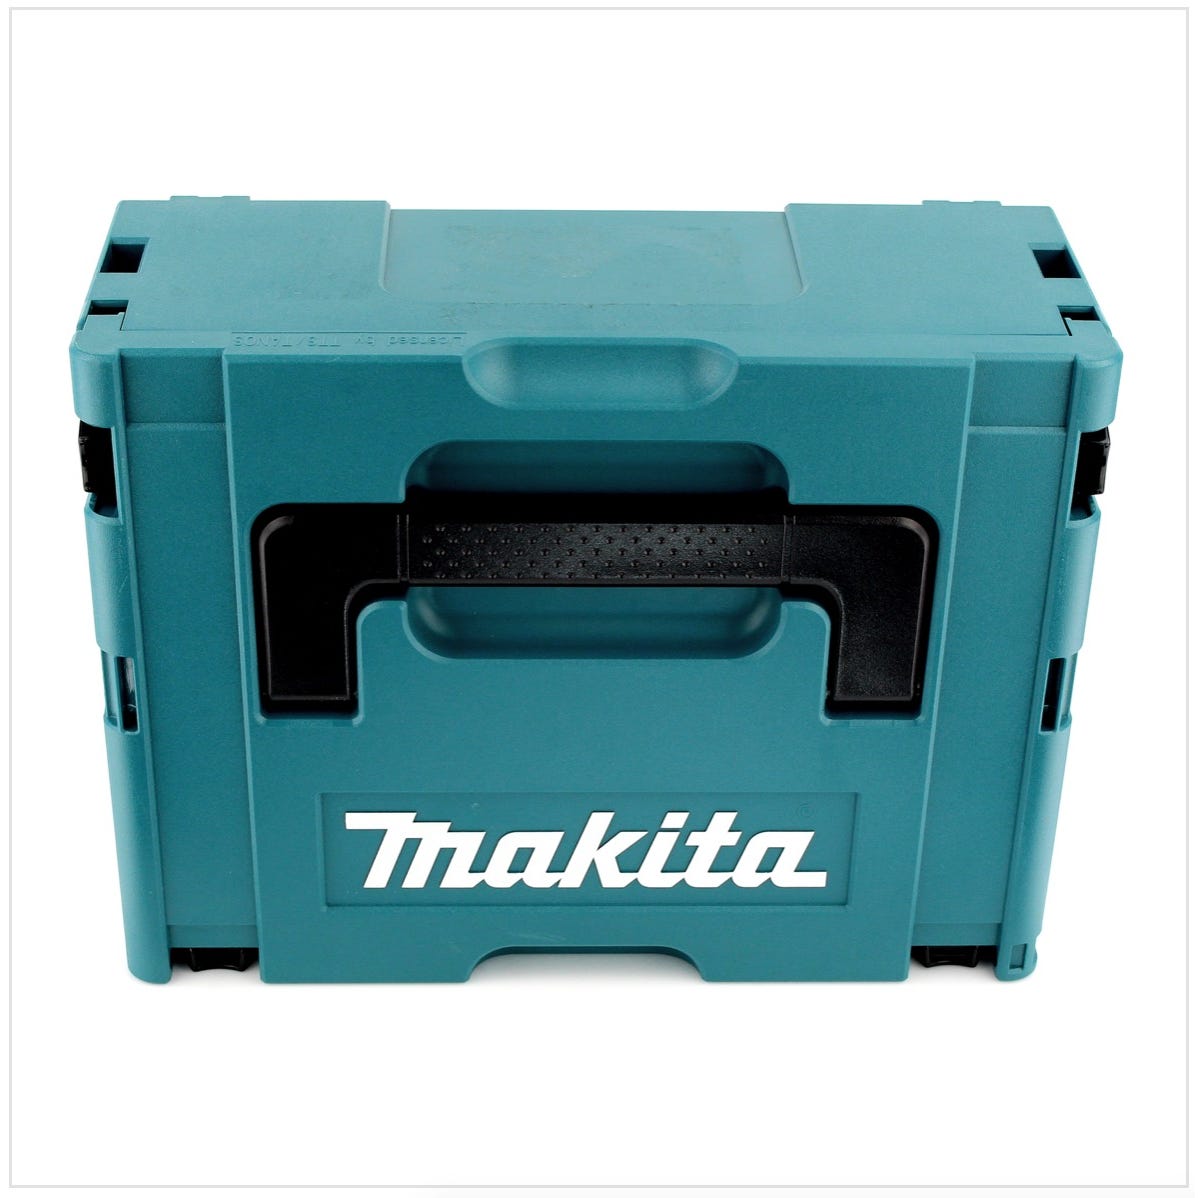 Makita DDF 483 RF1J 18 V Perceuse visseuse sans fil avec boîtier Makpac + 1x Batterie BL 1830 3,0 Ah + Chargeur DC18RC 2